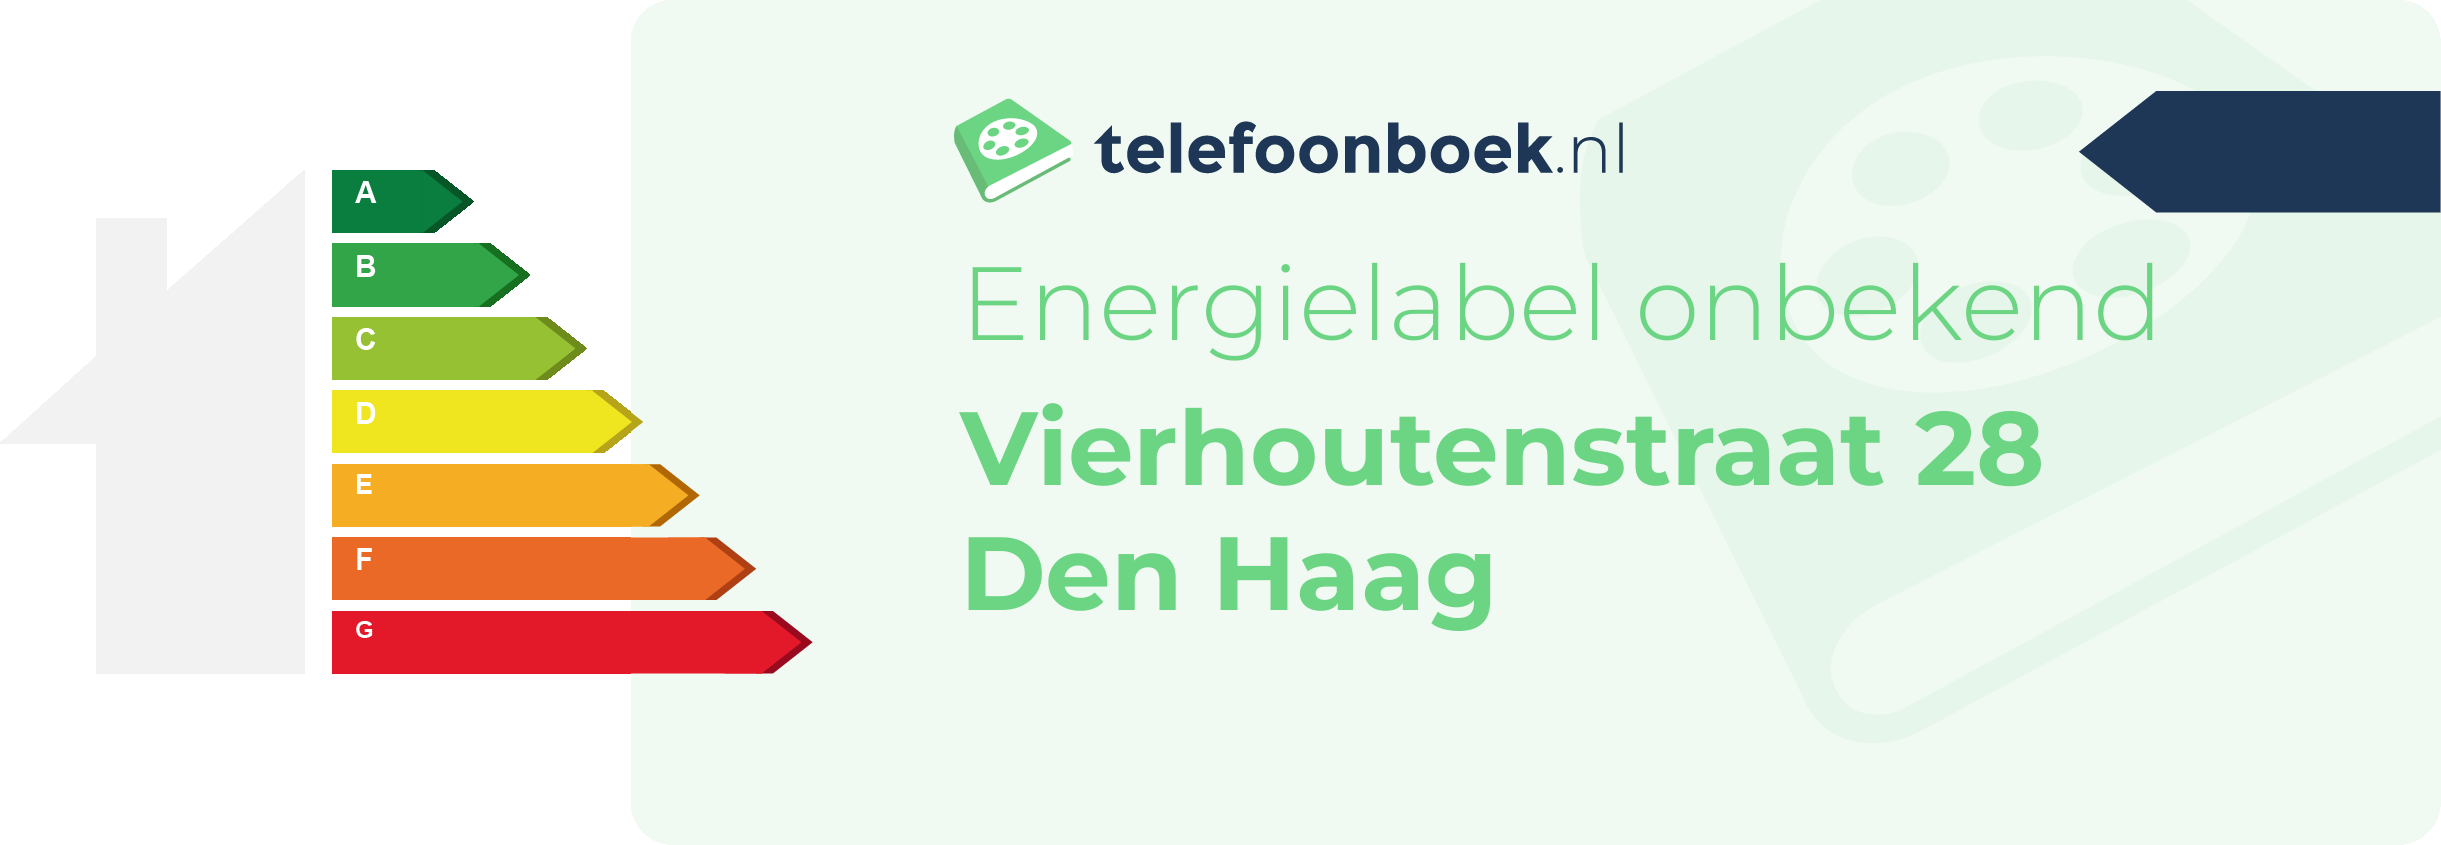 Energielabel Vierhoutenstraat 28 Den Haag